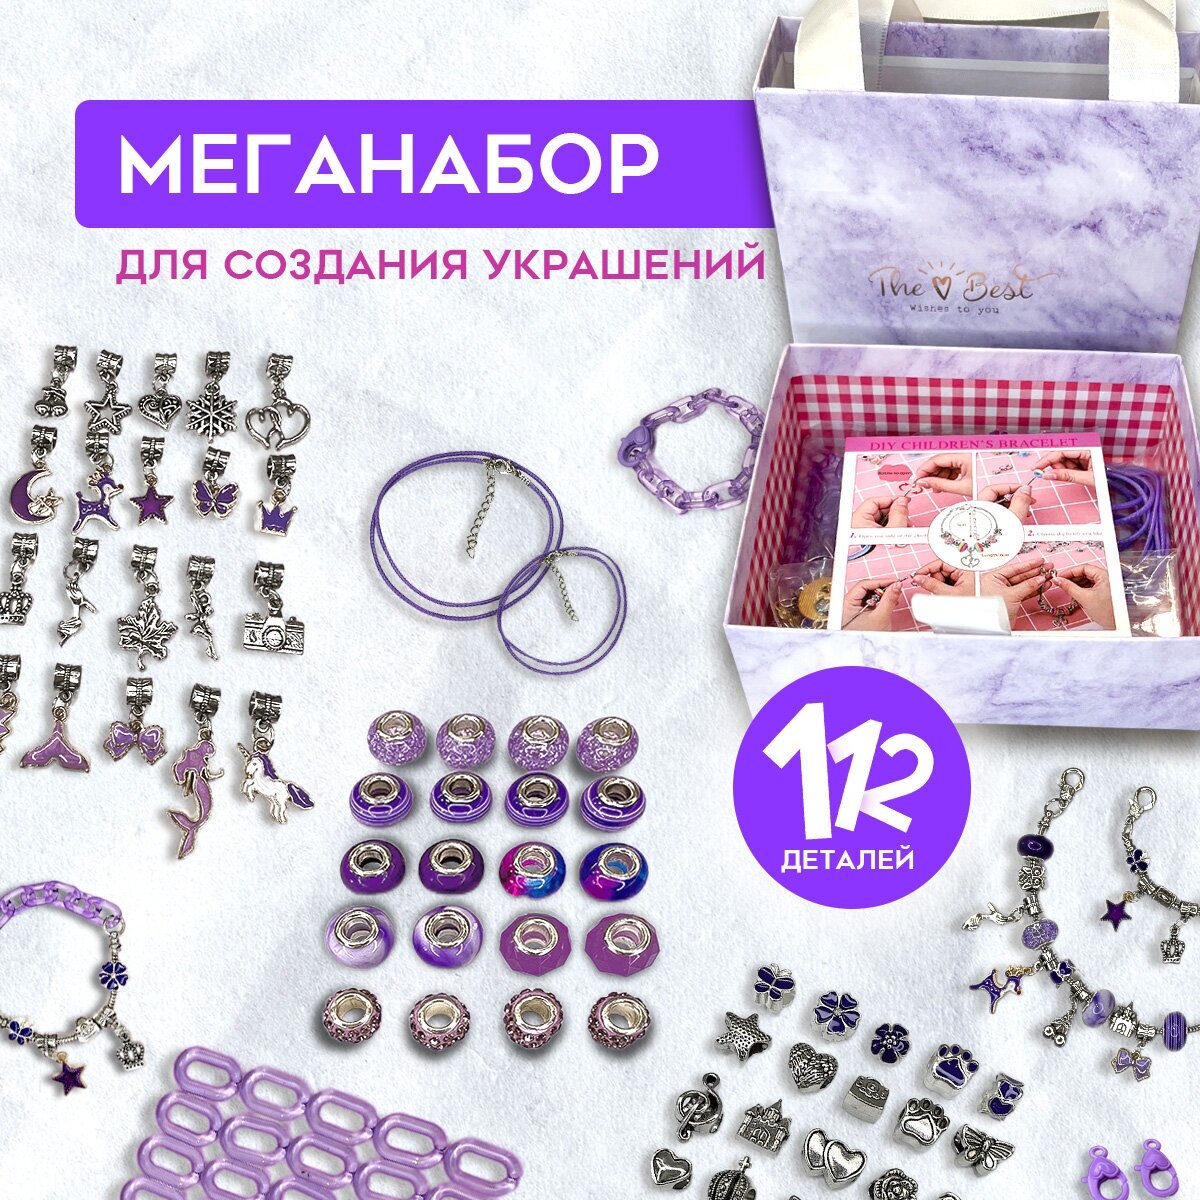 Подарочный набор для создания украшений для девочки / Создание браслетов, украшение для девочки "Фиалка" BAMPY, 112 деталей